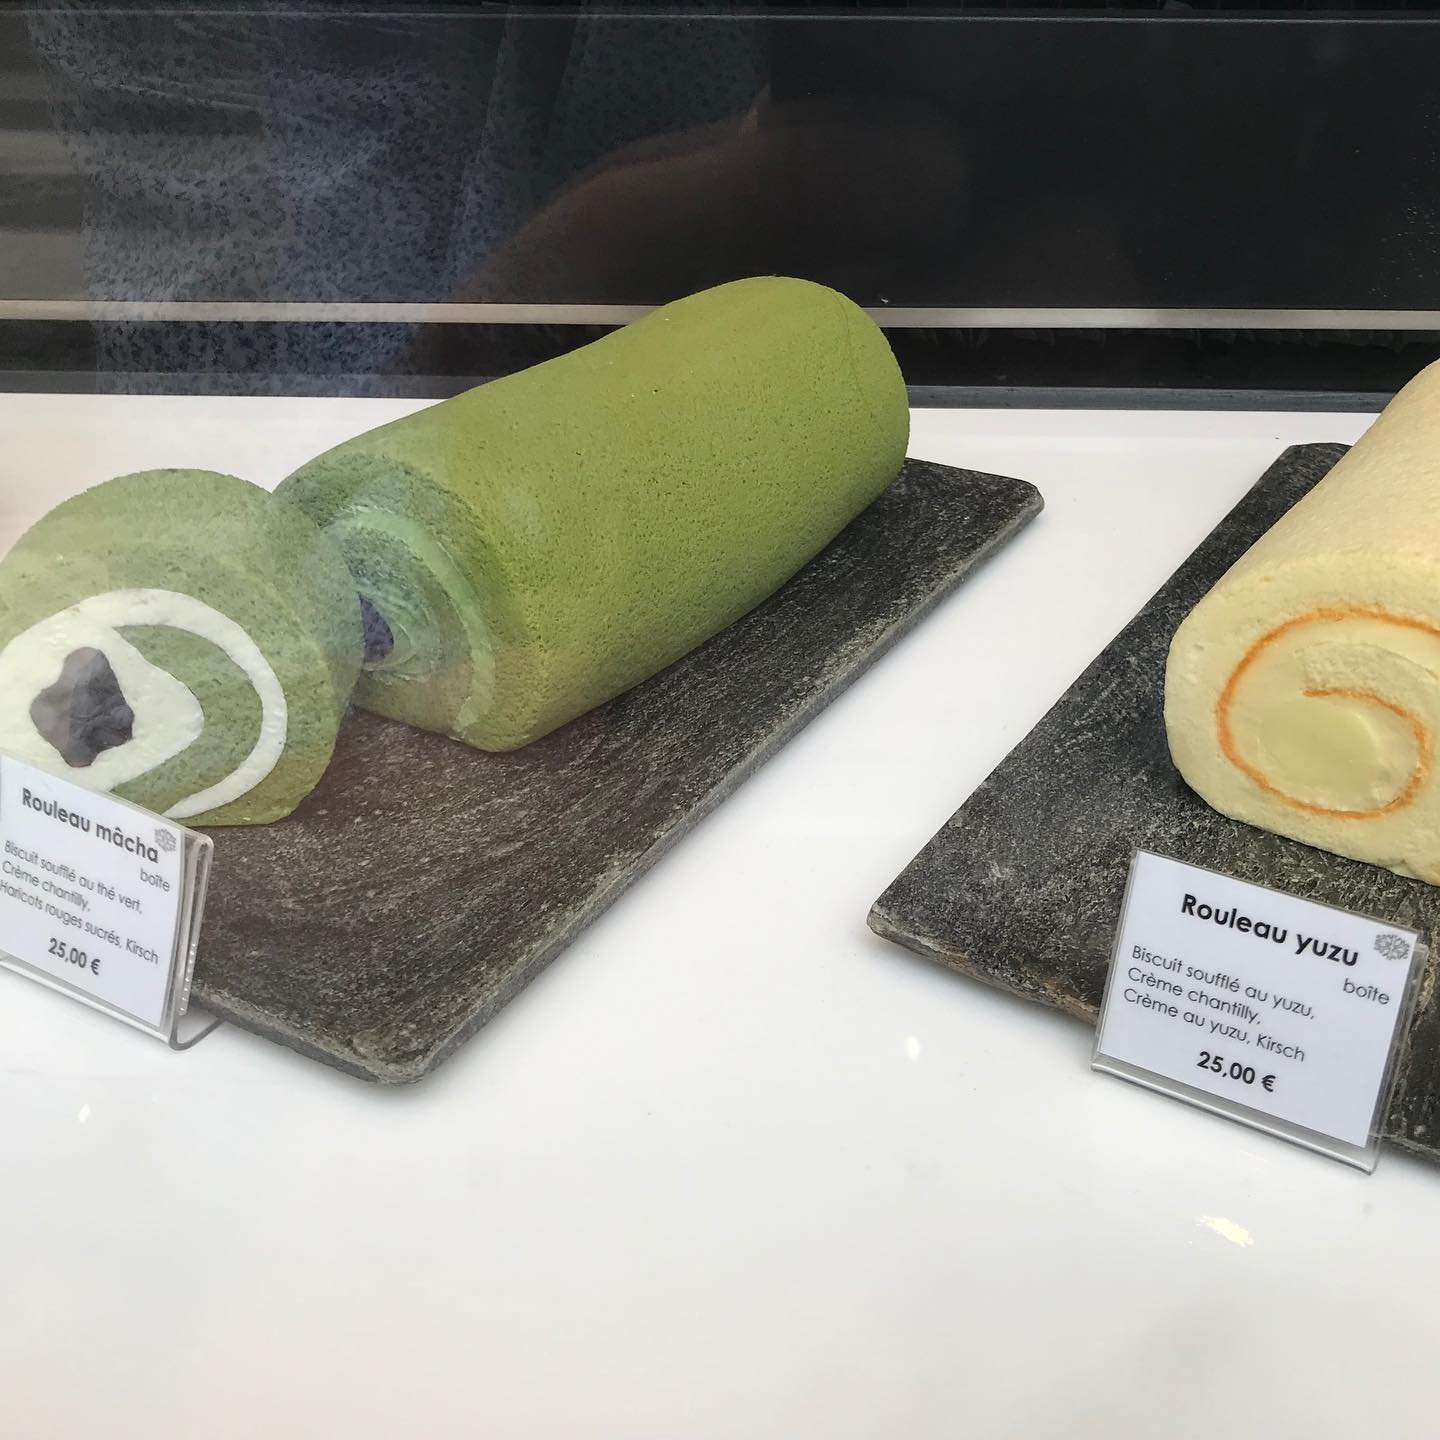 Sadaharu-Aoki-Matcha-Pastries.jpg.jpg